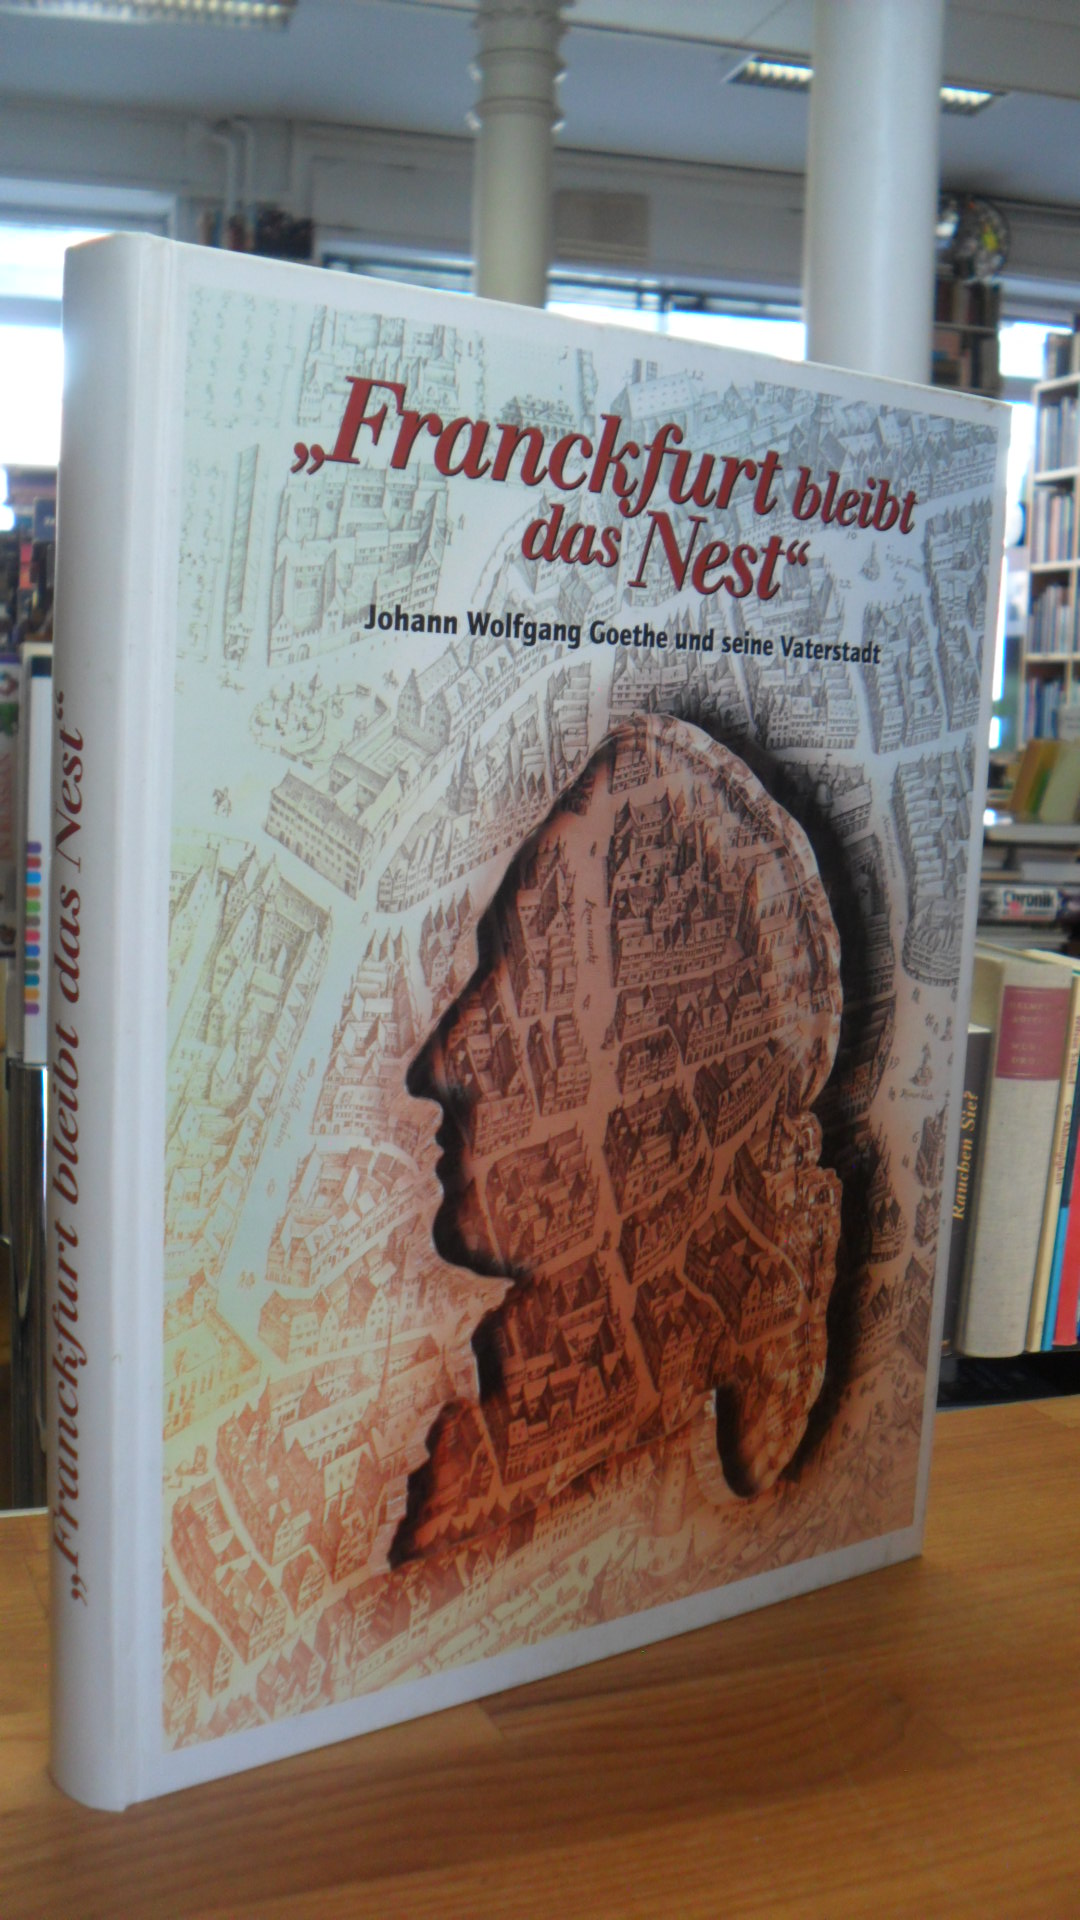 Stahl, „Franckfurt bleibt das Nest“ – Johann Wolfgang Goethe und seine Vaterstad